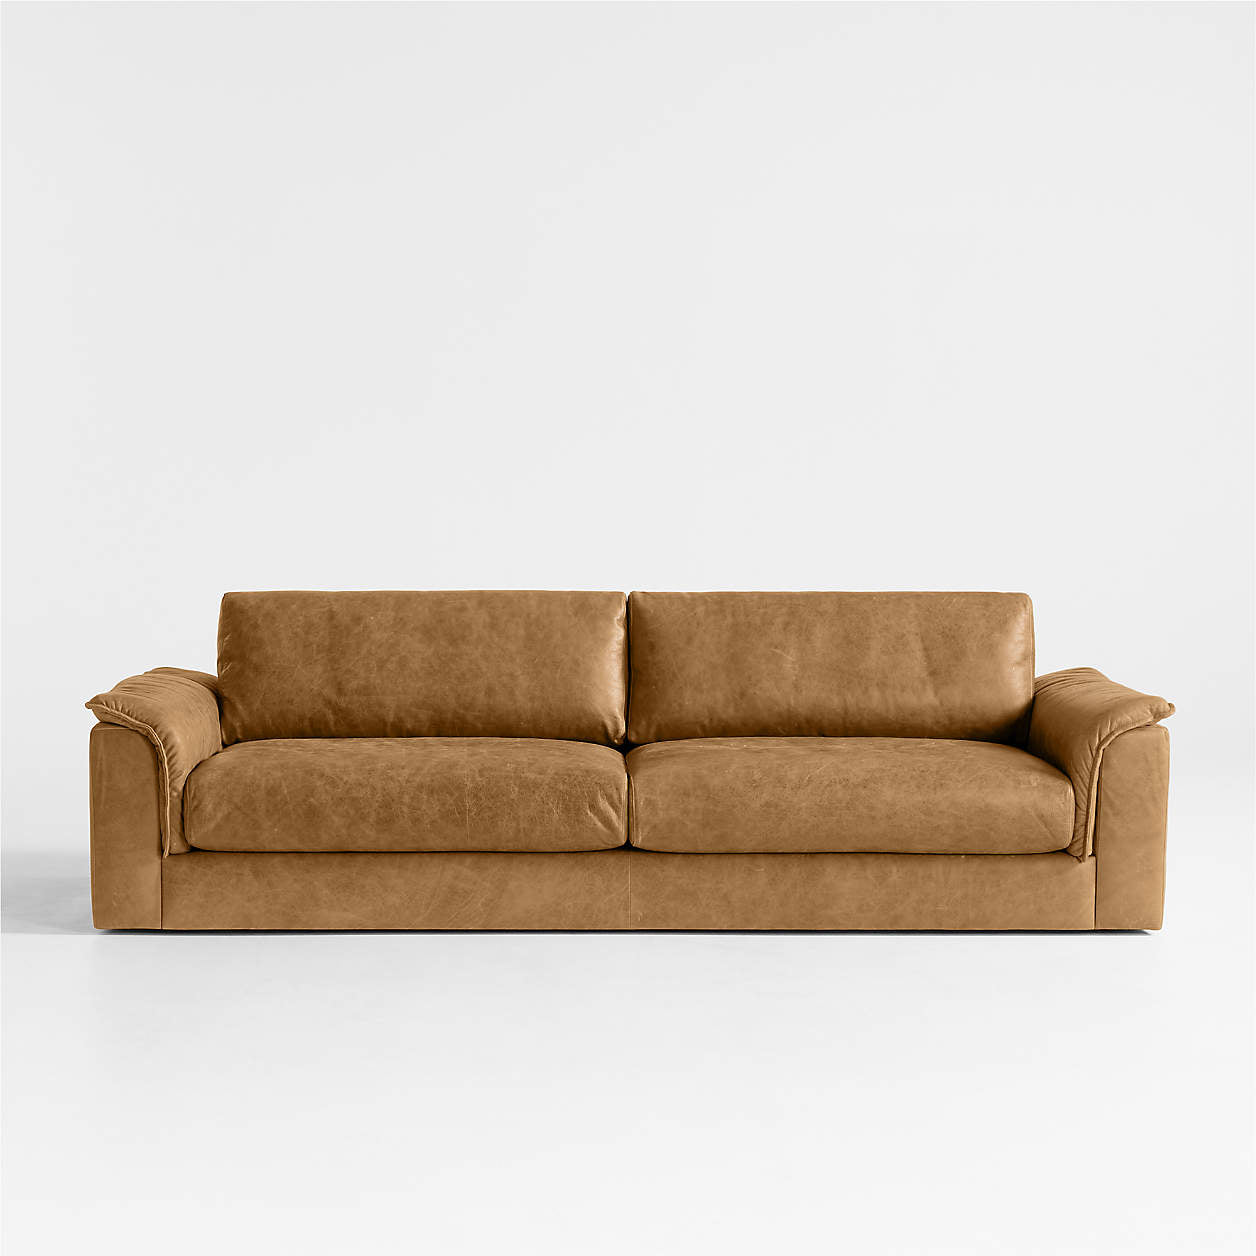 La Brea Leather Sofa